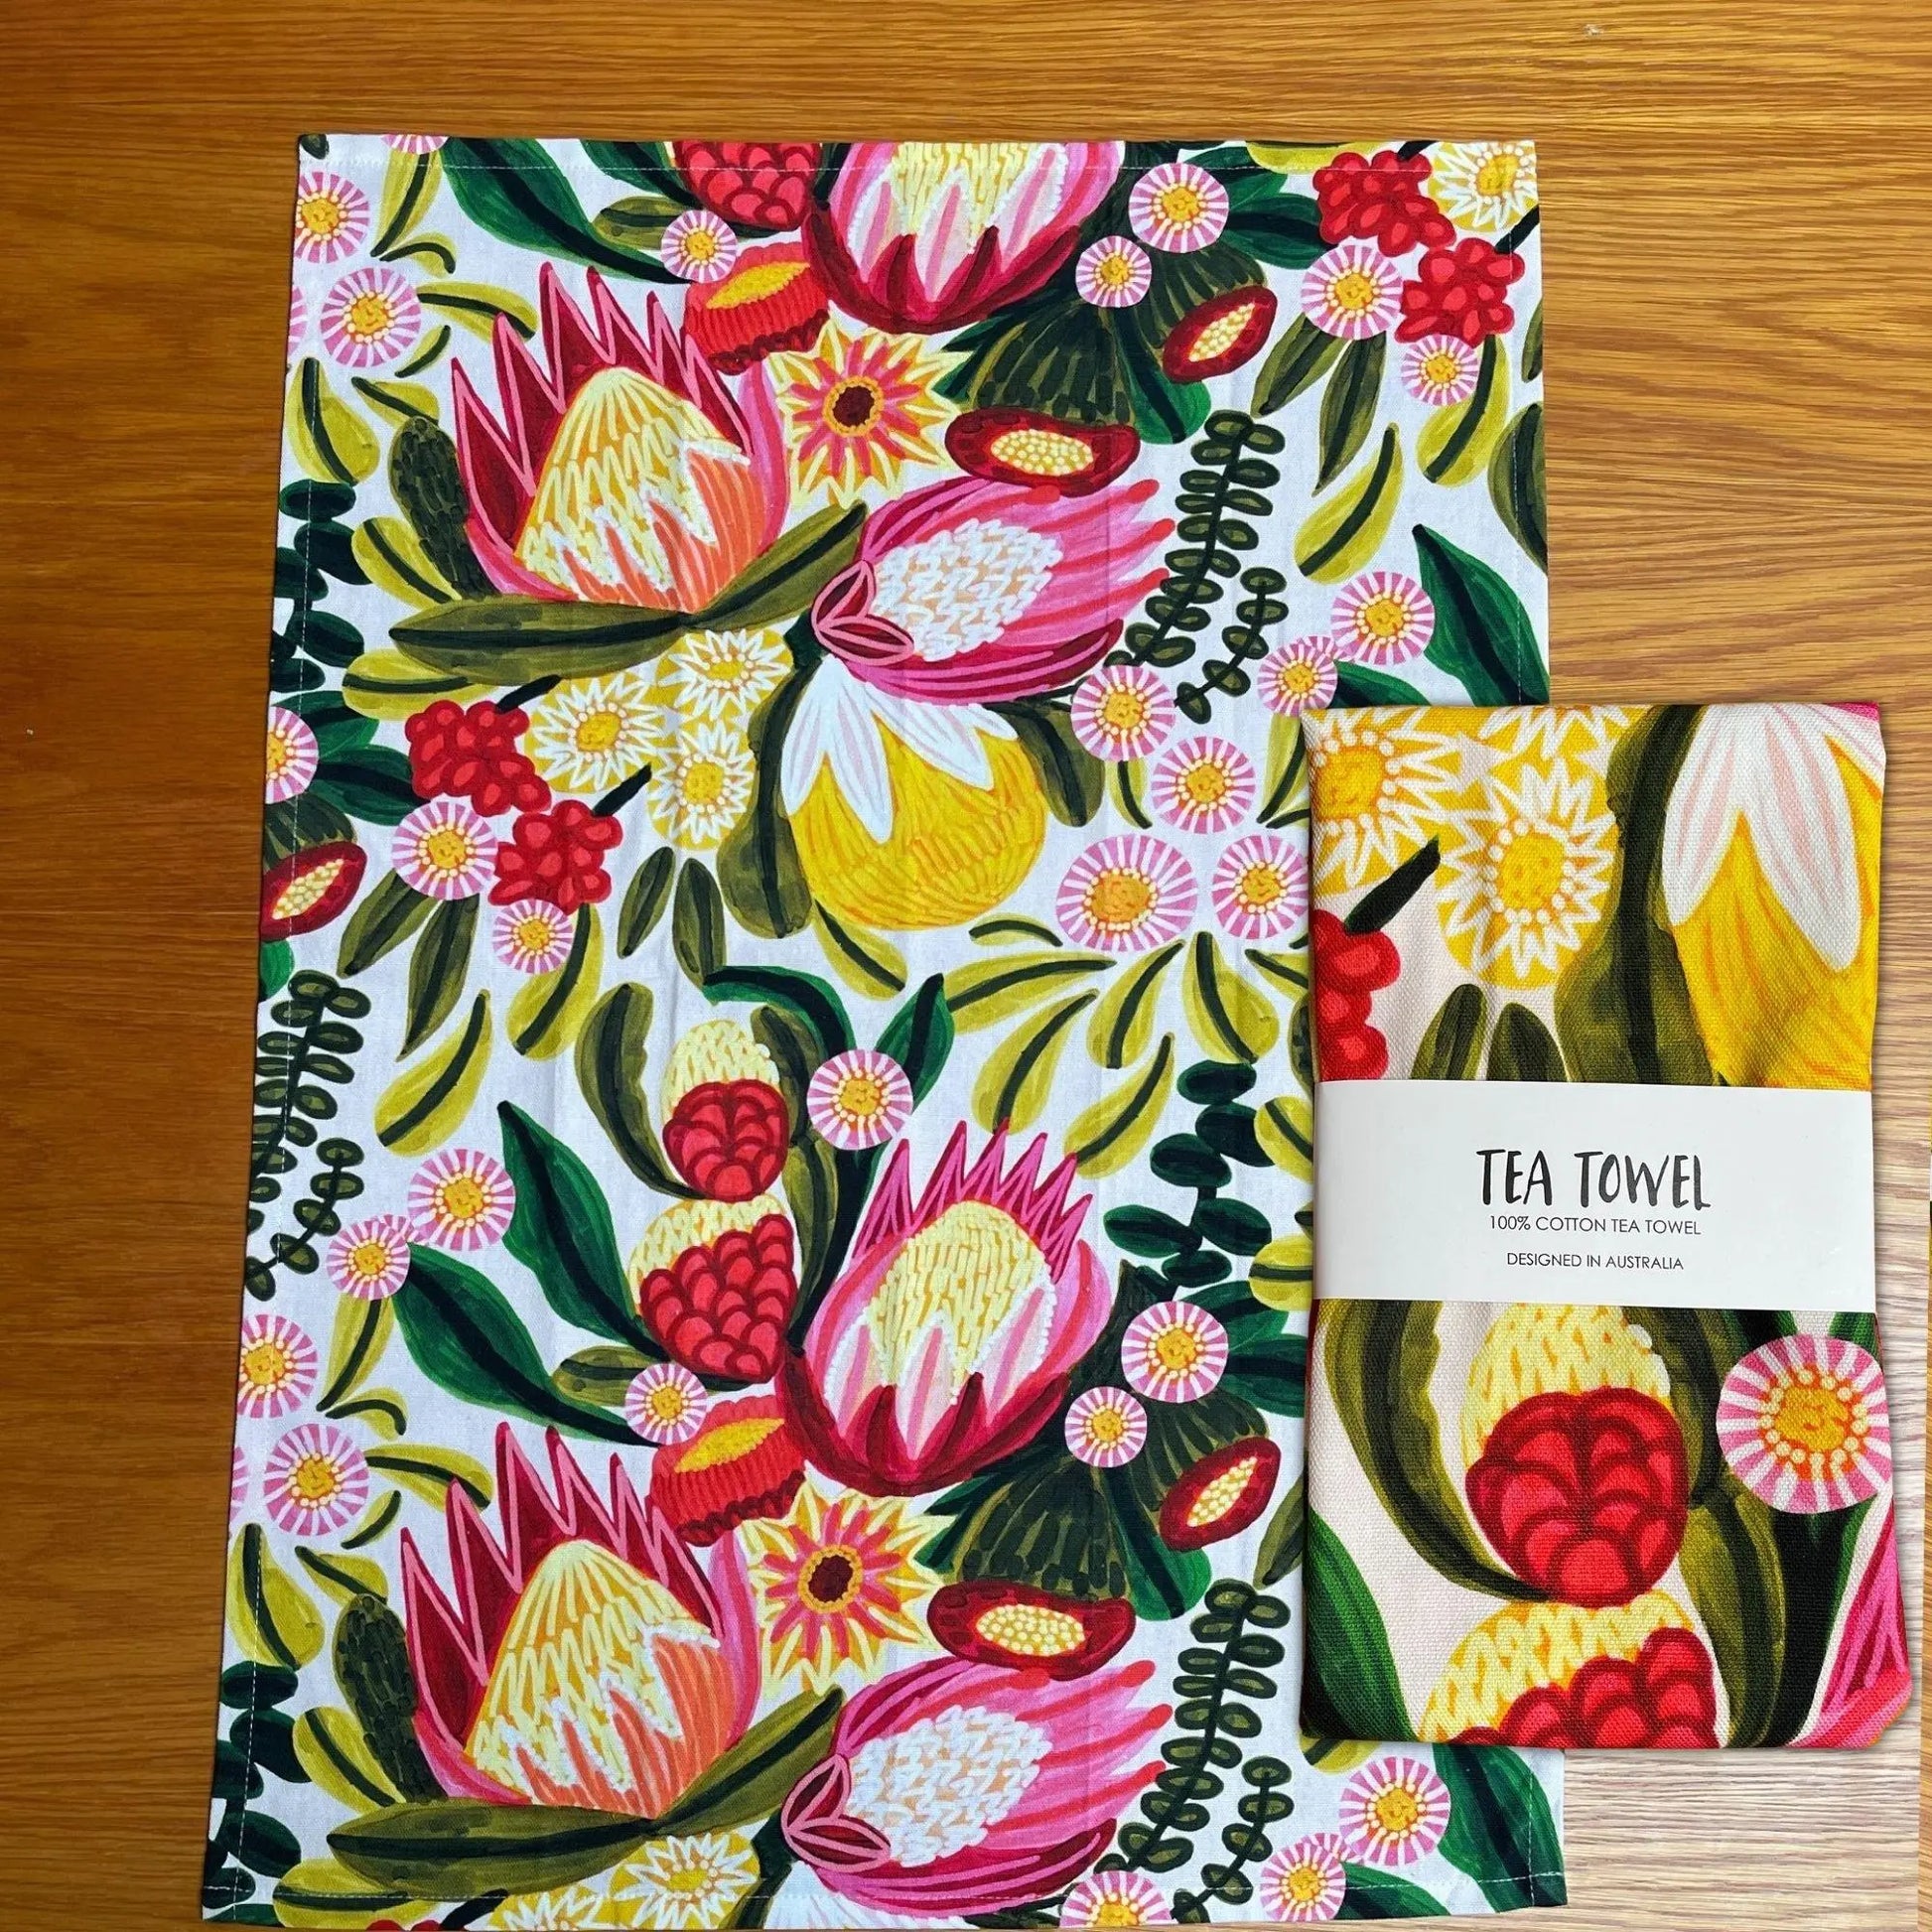 Festive proteas botanical print tea towel by Kirsten Katz